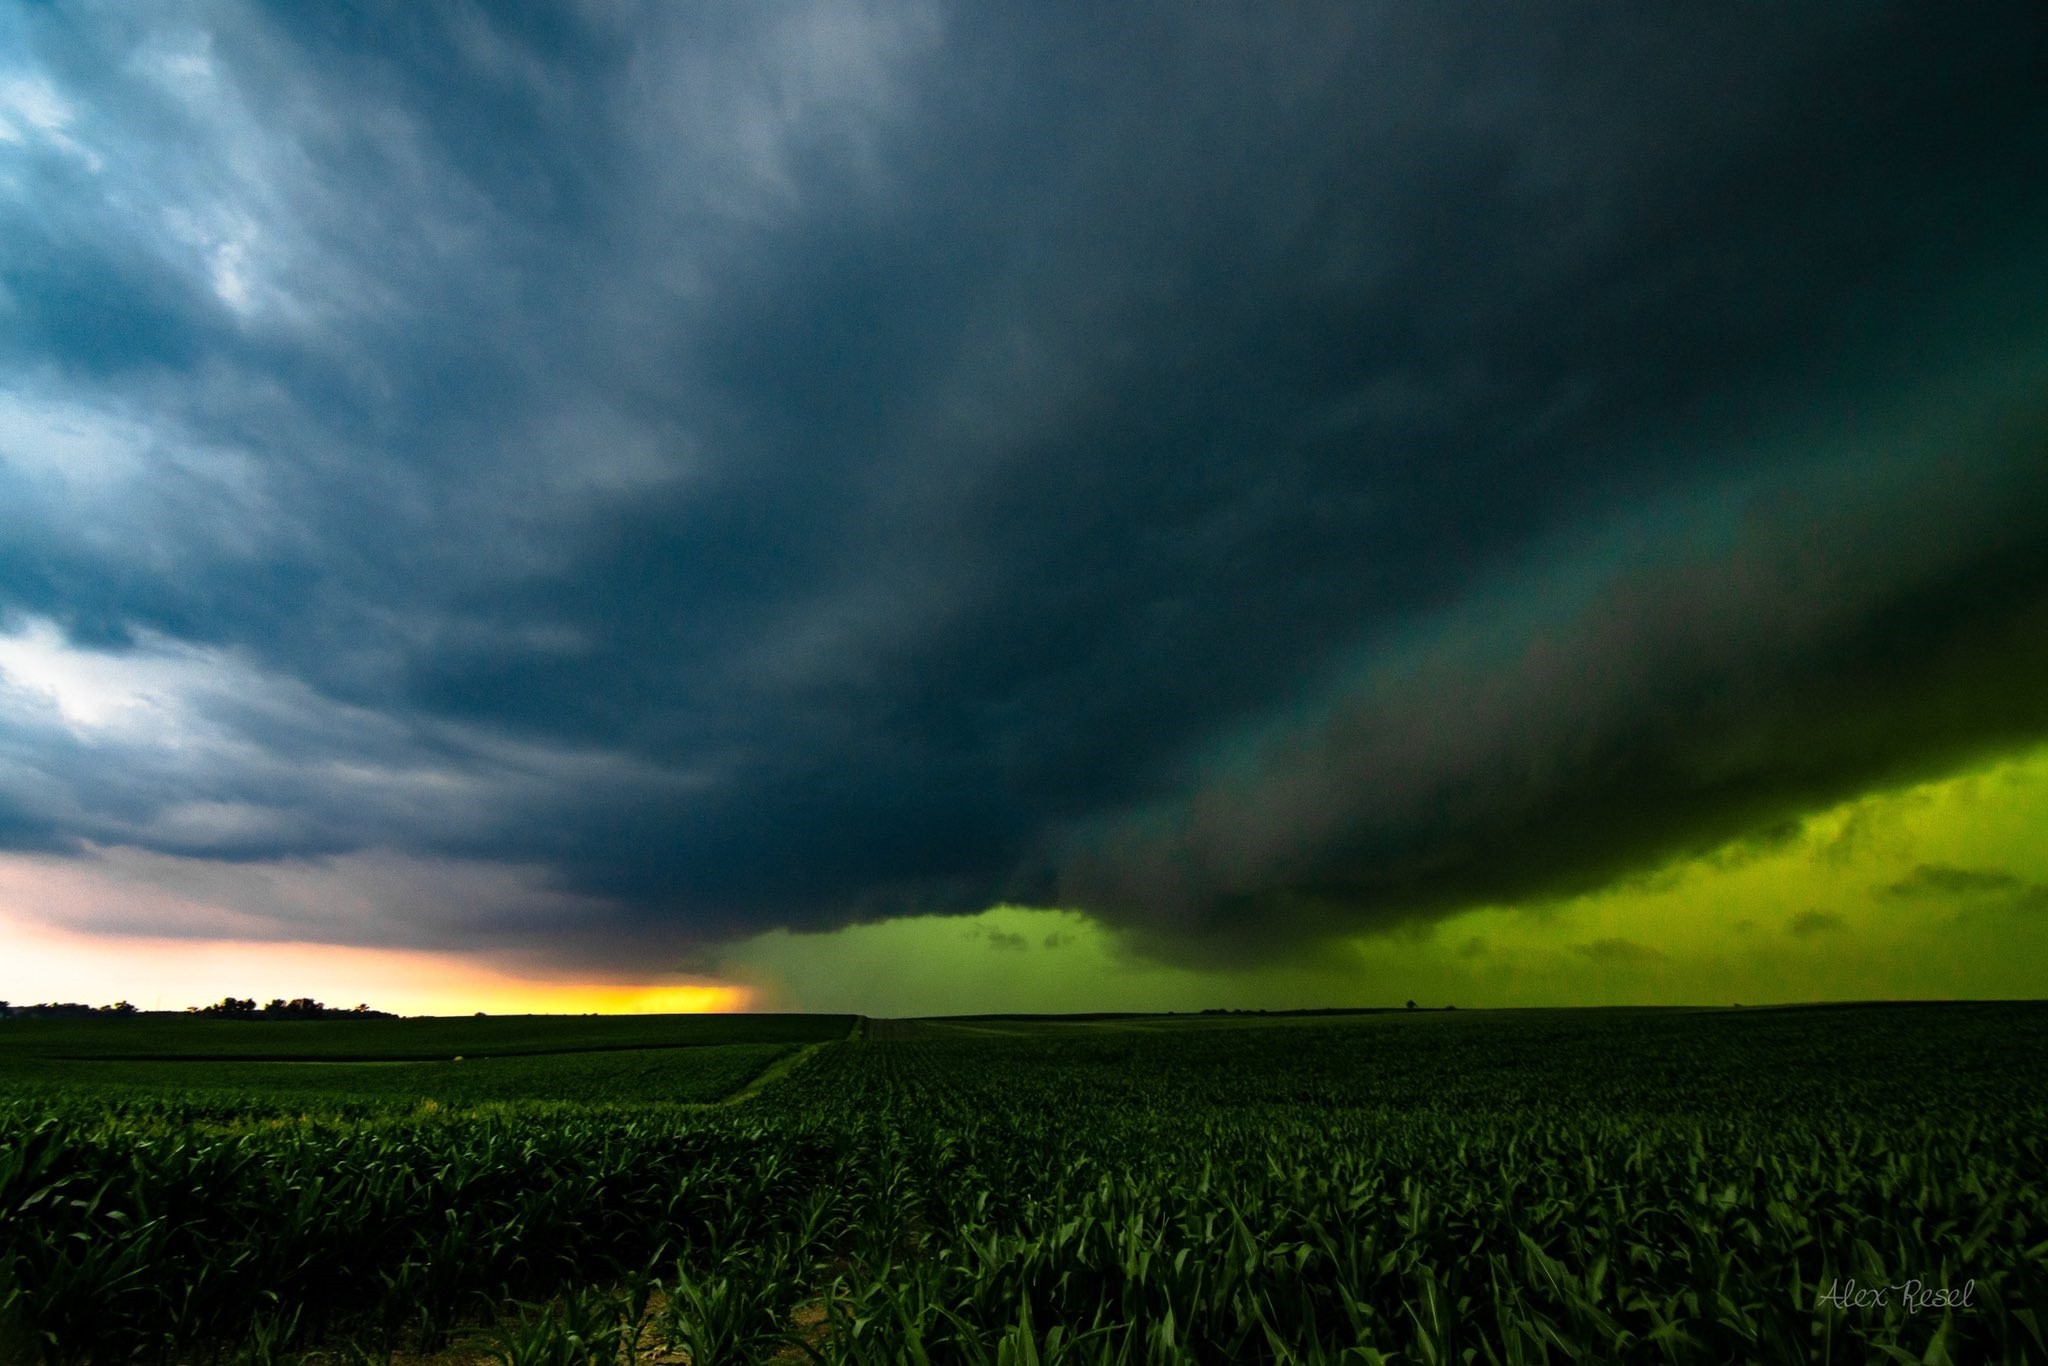  O derecho é um fenômeno atmosférico que se manifesta em tempestades (Foto: Reprodução/Twitter/@aresel_)